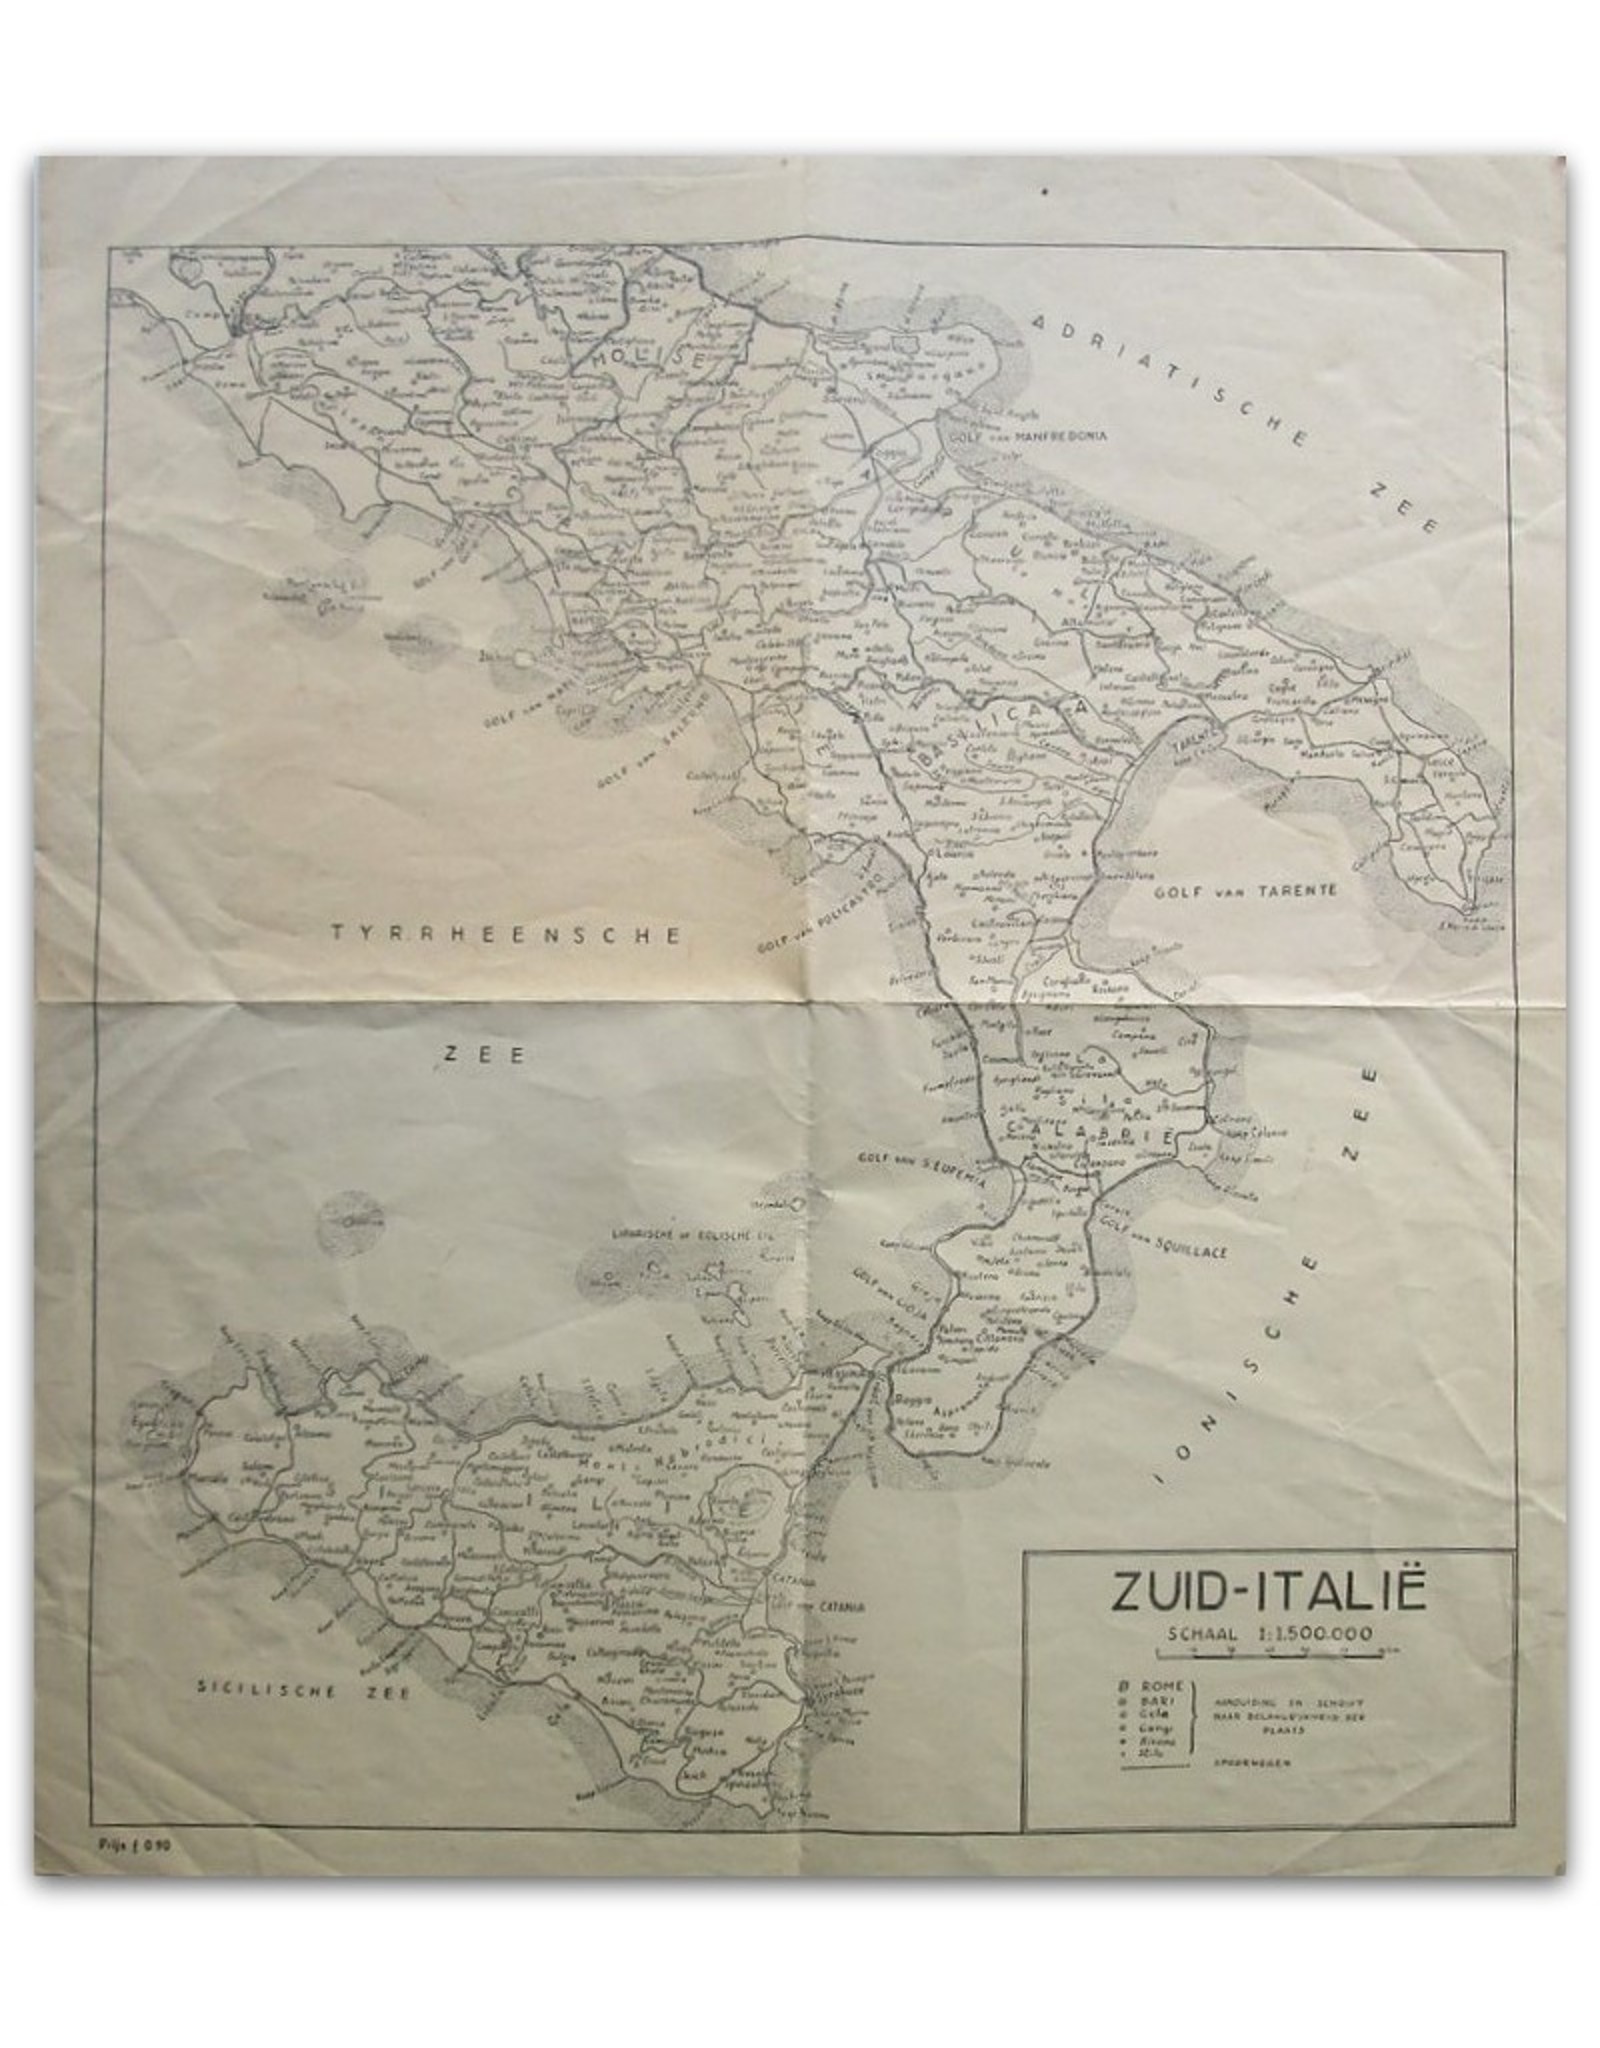 [Landkaart van] Zuid-Italië. Schaal 1:1.500.000